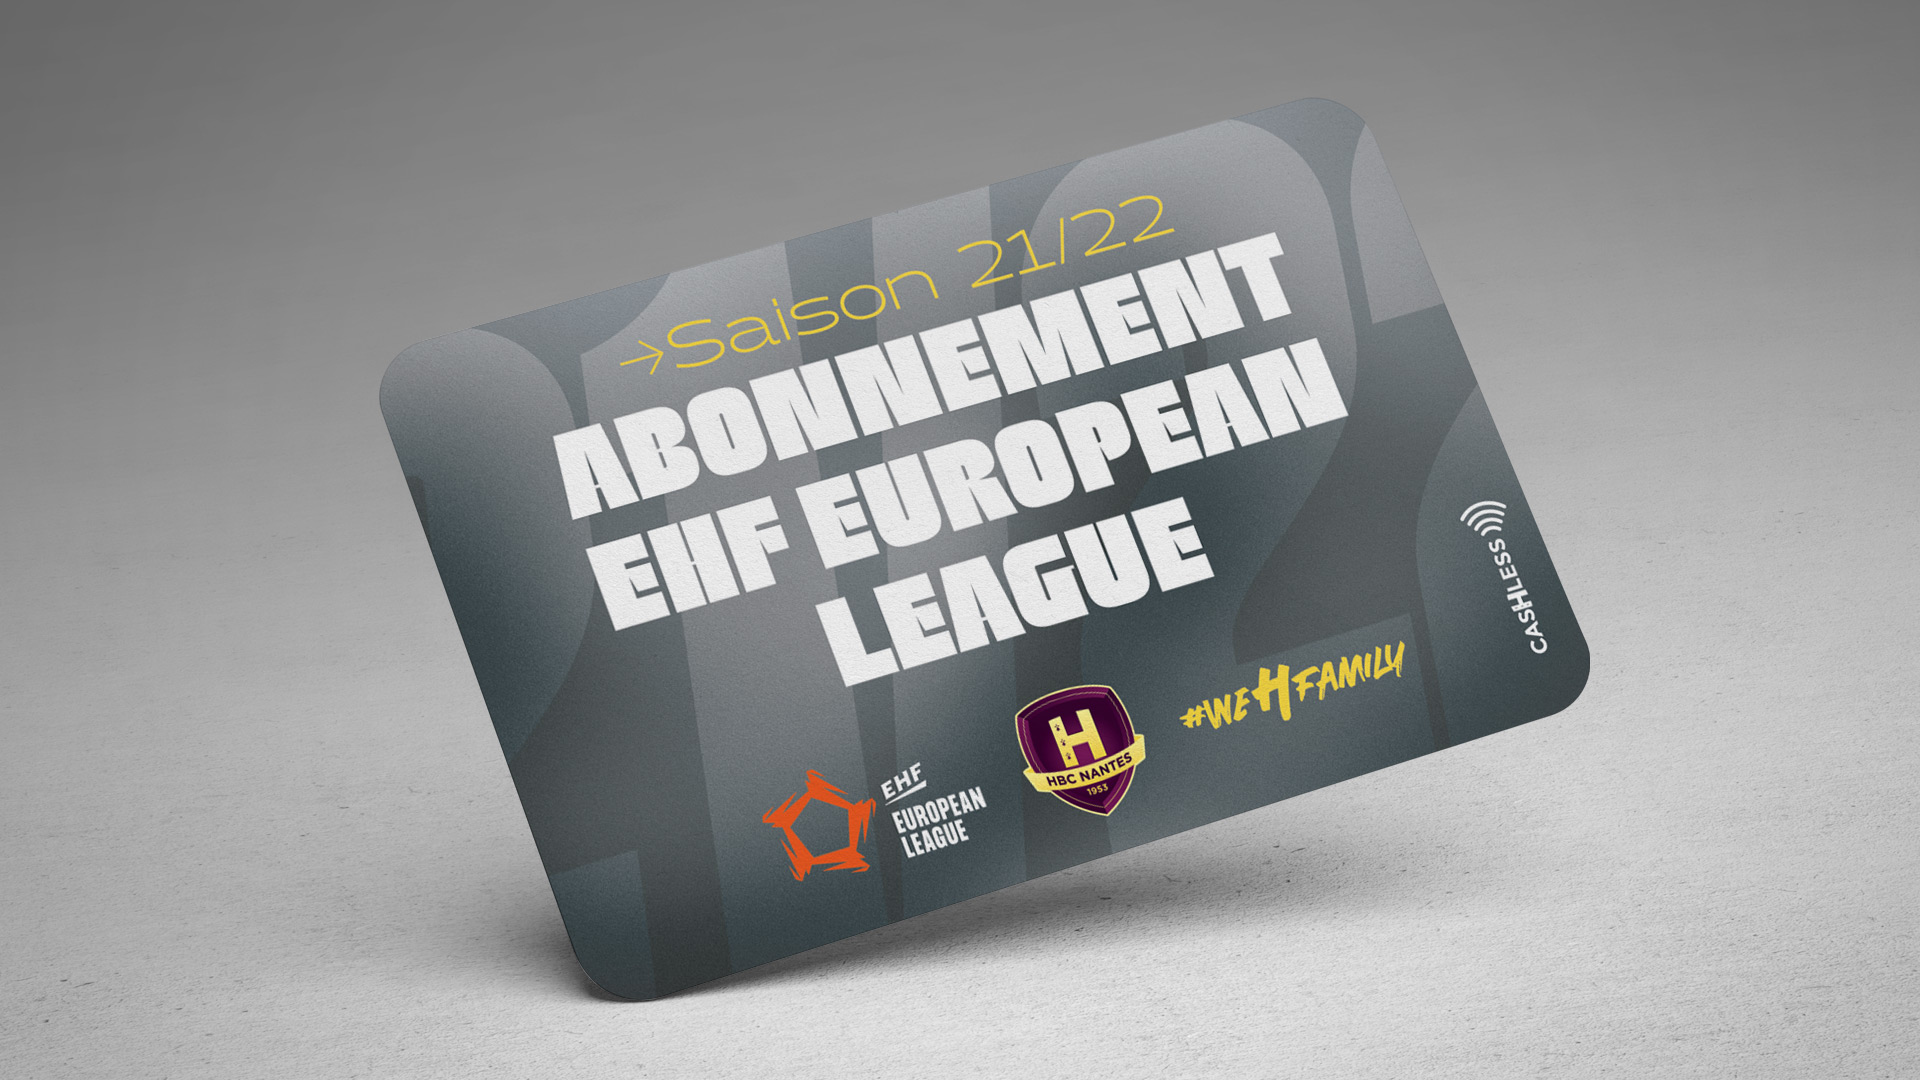 Lemgo : Carte d'abonné EHF European league (grise)